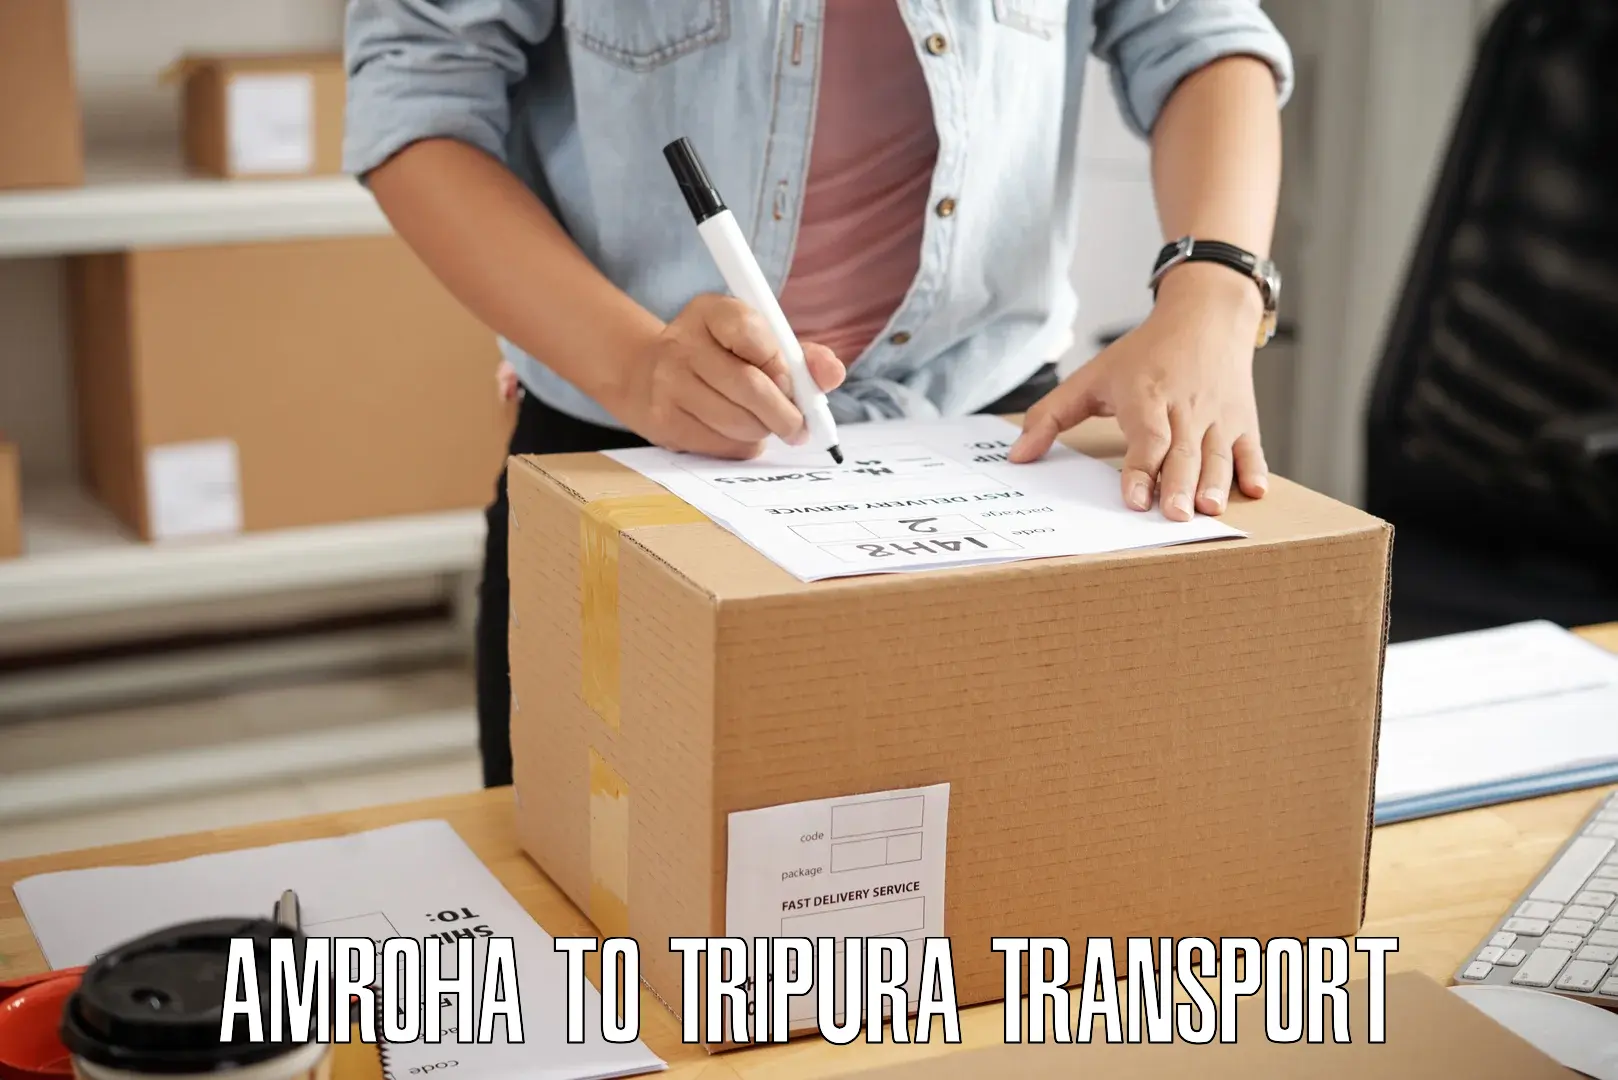 Furniture transport service Amroha to Ambassa